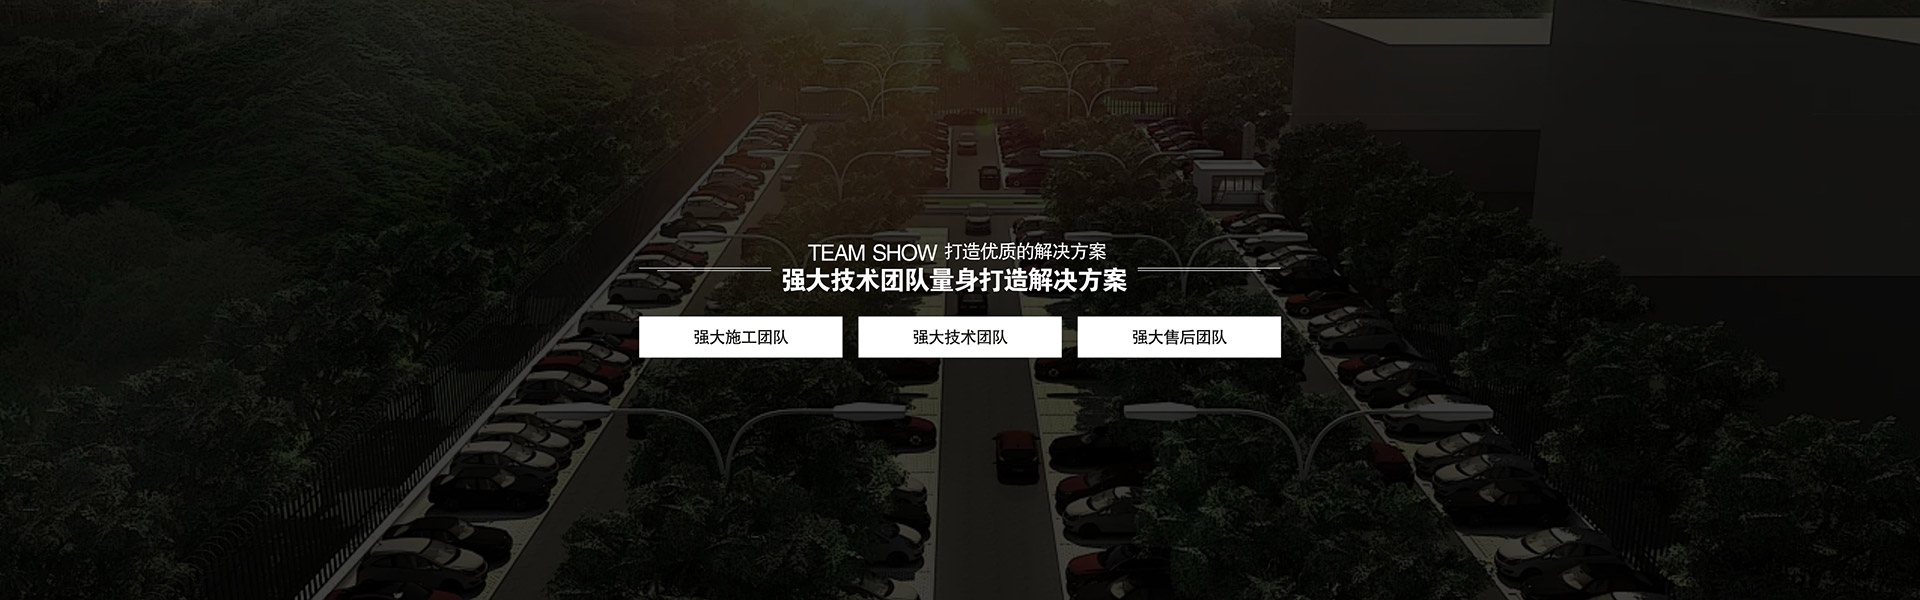 上海虛擬仿真觸控系統,上海虛擬仿真360度全息成像技術,上海虛擬仿真墻面互動投影畫畫,上海虛擬仿真常見病知識問答,上海虛擬仿真吸毒對人體的危害,